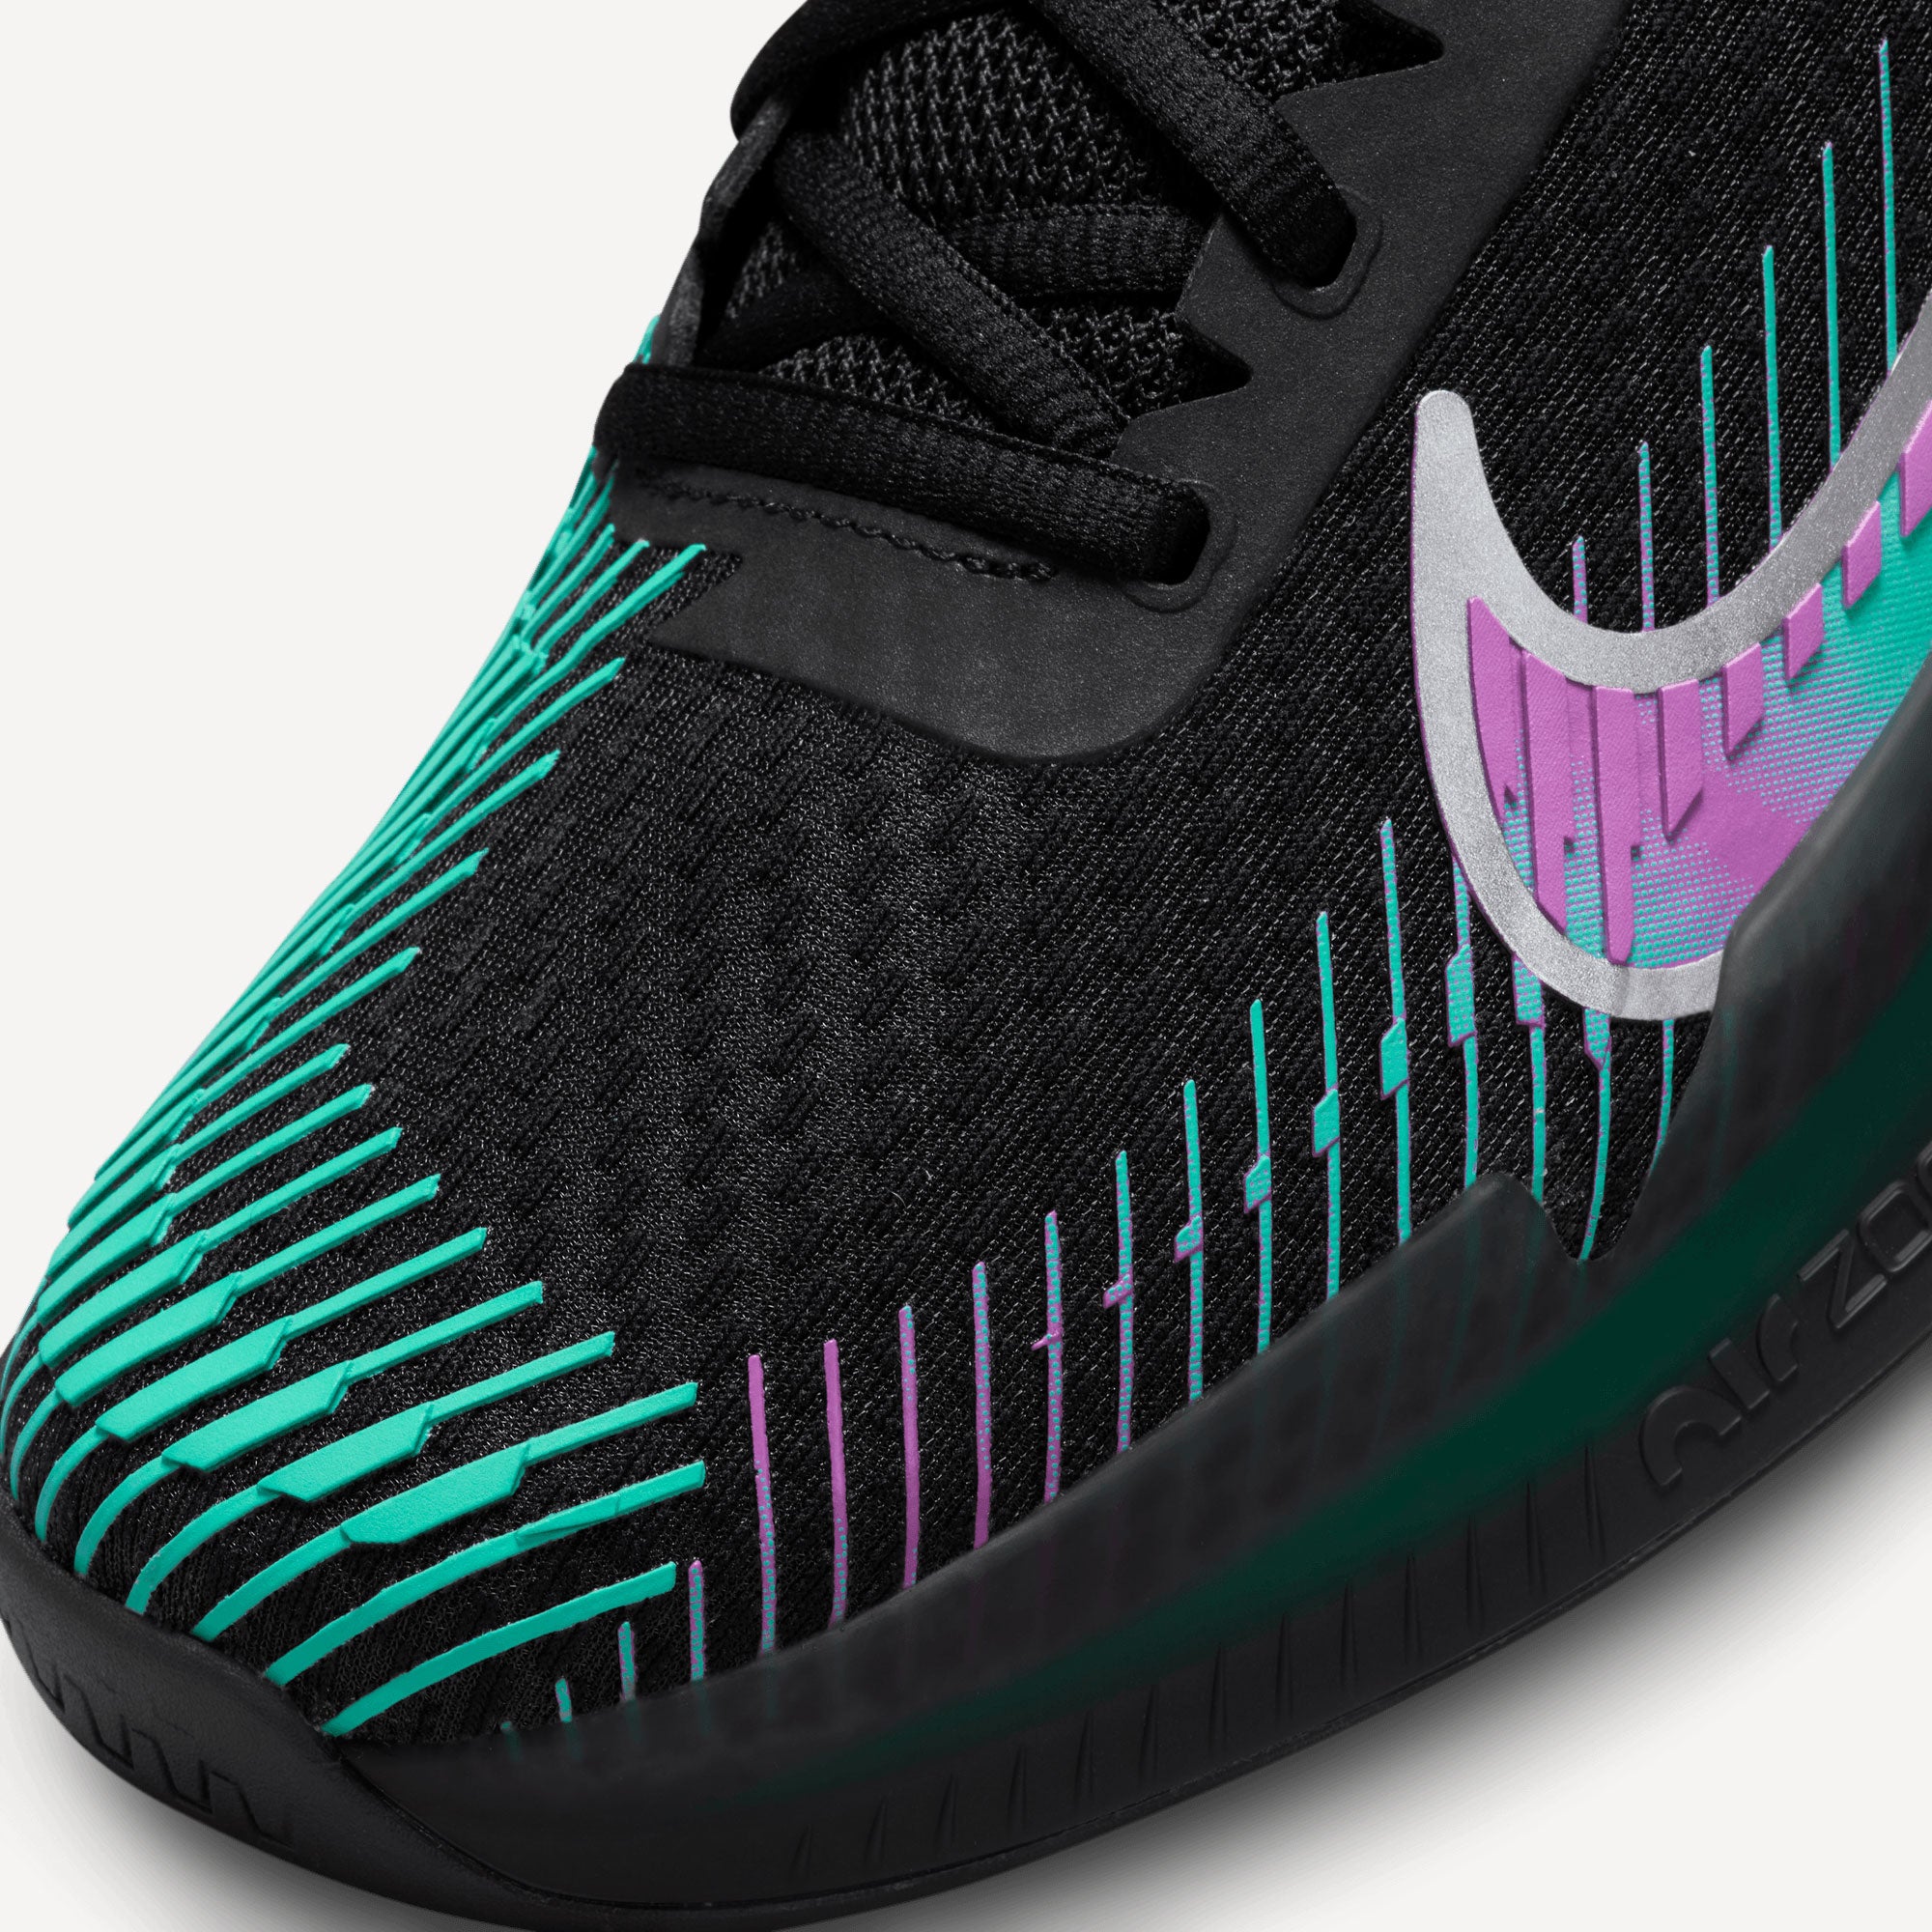 NikeCourt Air Zoom Vapor 11 Premium Men's Hard Court Tennis Shoes Black (7)